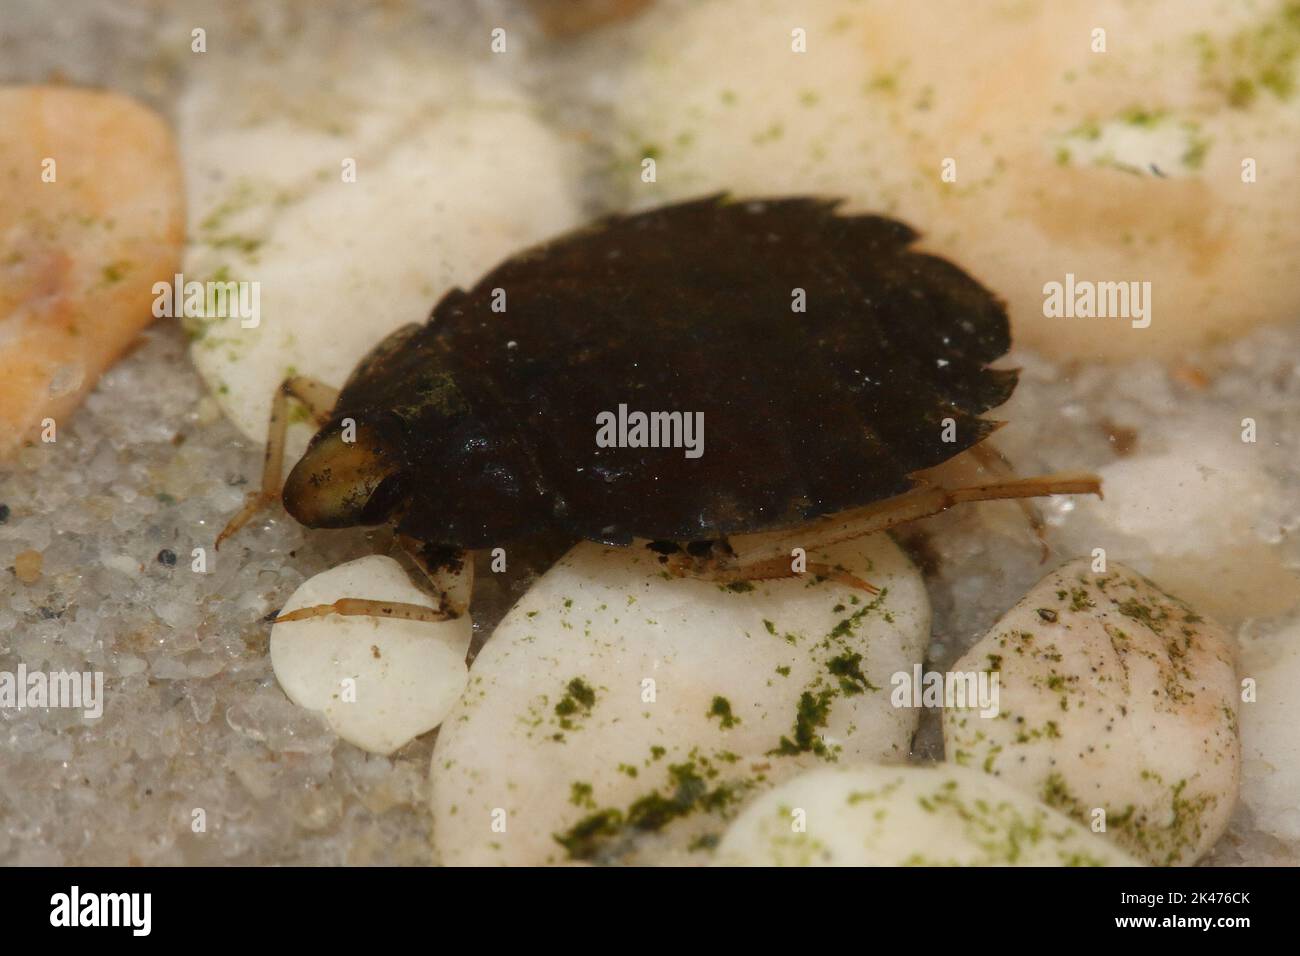 Il vero bug acquatico e senza alette (Aphelocheirus aestivalis) in un habitat naturale subacqueo Foto Stock